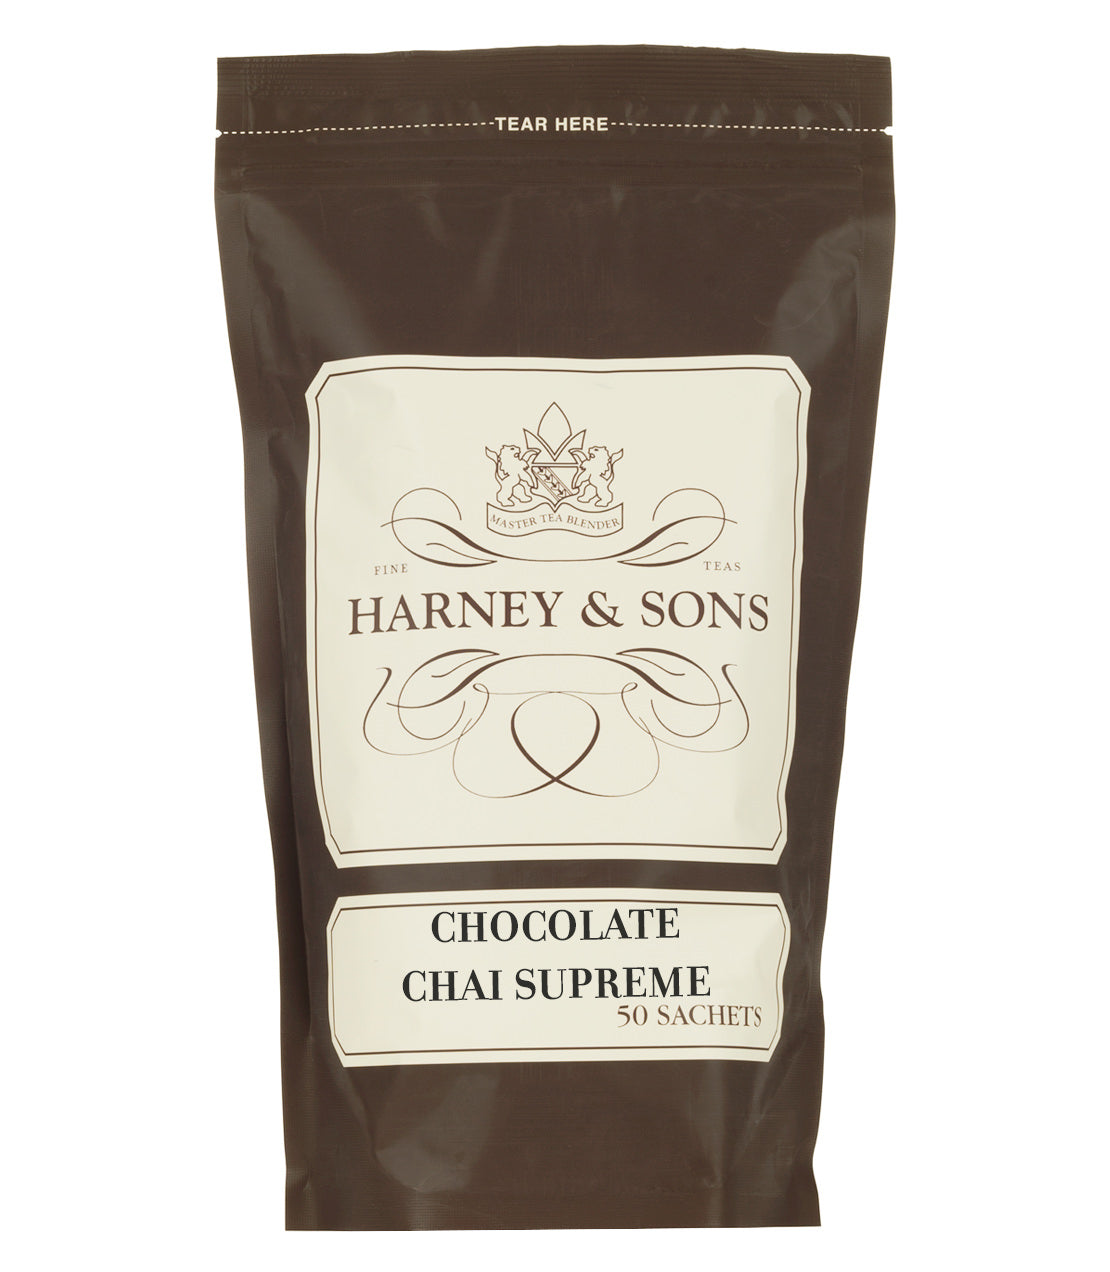 Chocolate Chai Supreme - Sachets Bag of 50 Sachets - Harney & Sons Fine Teas